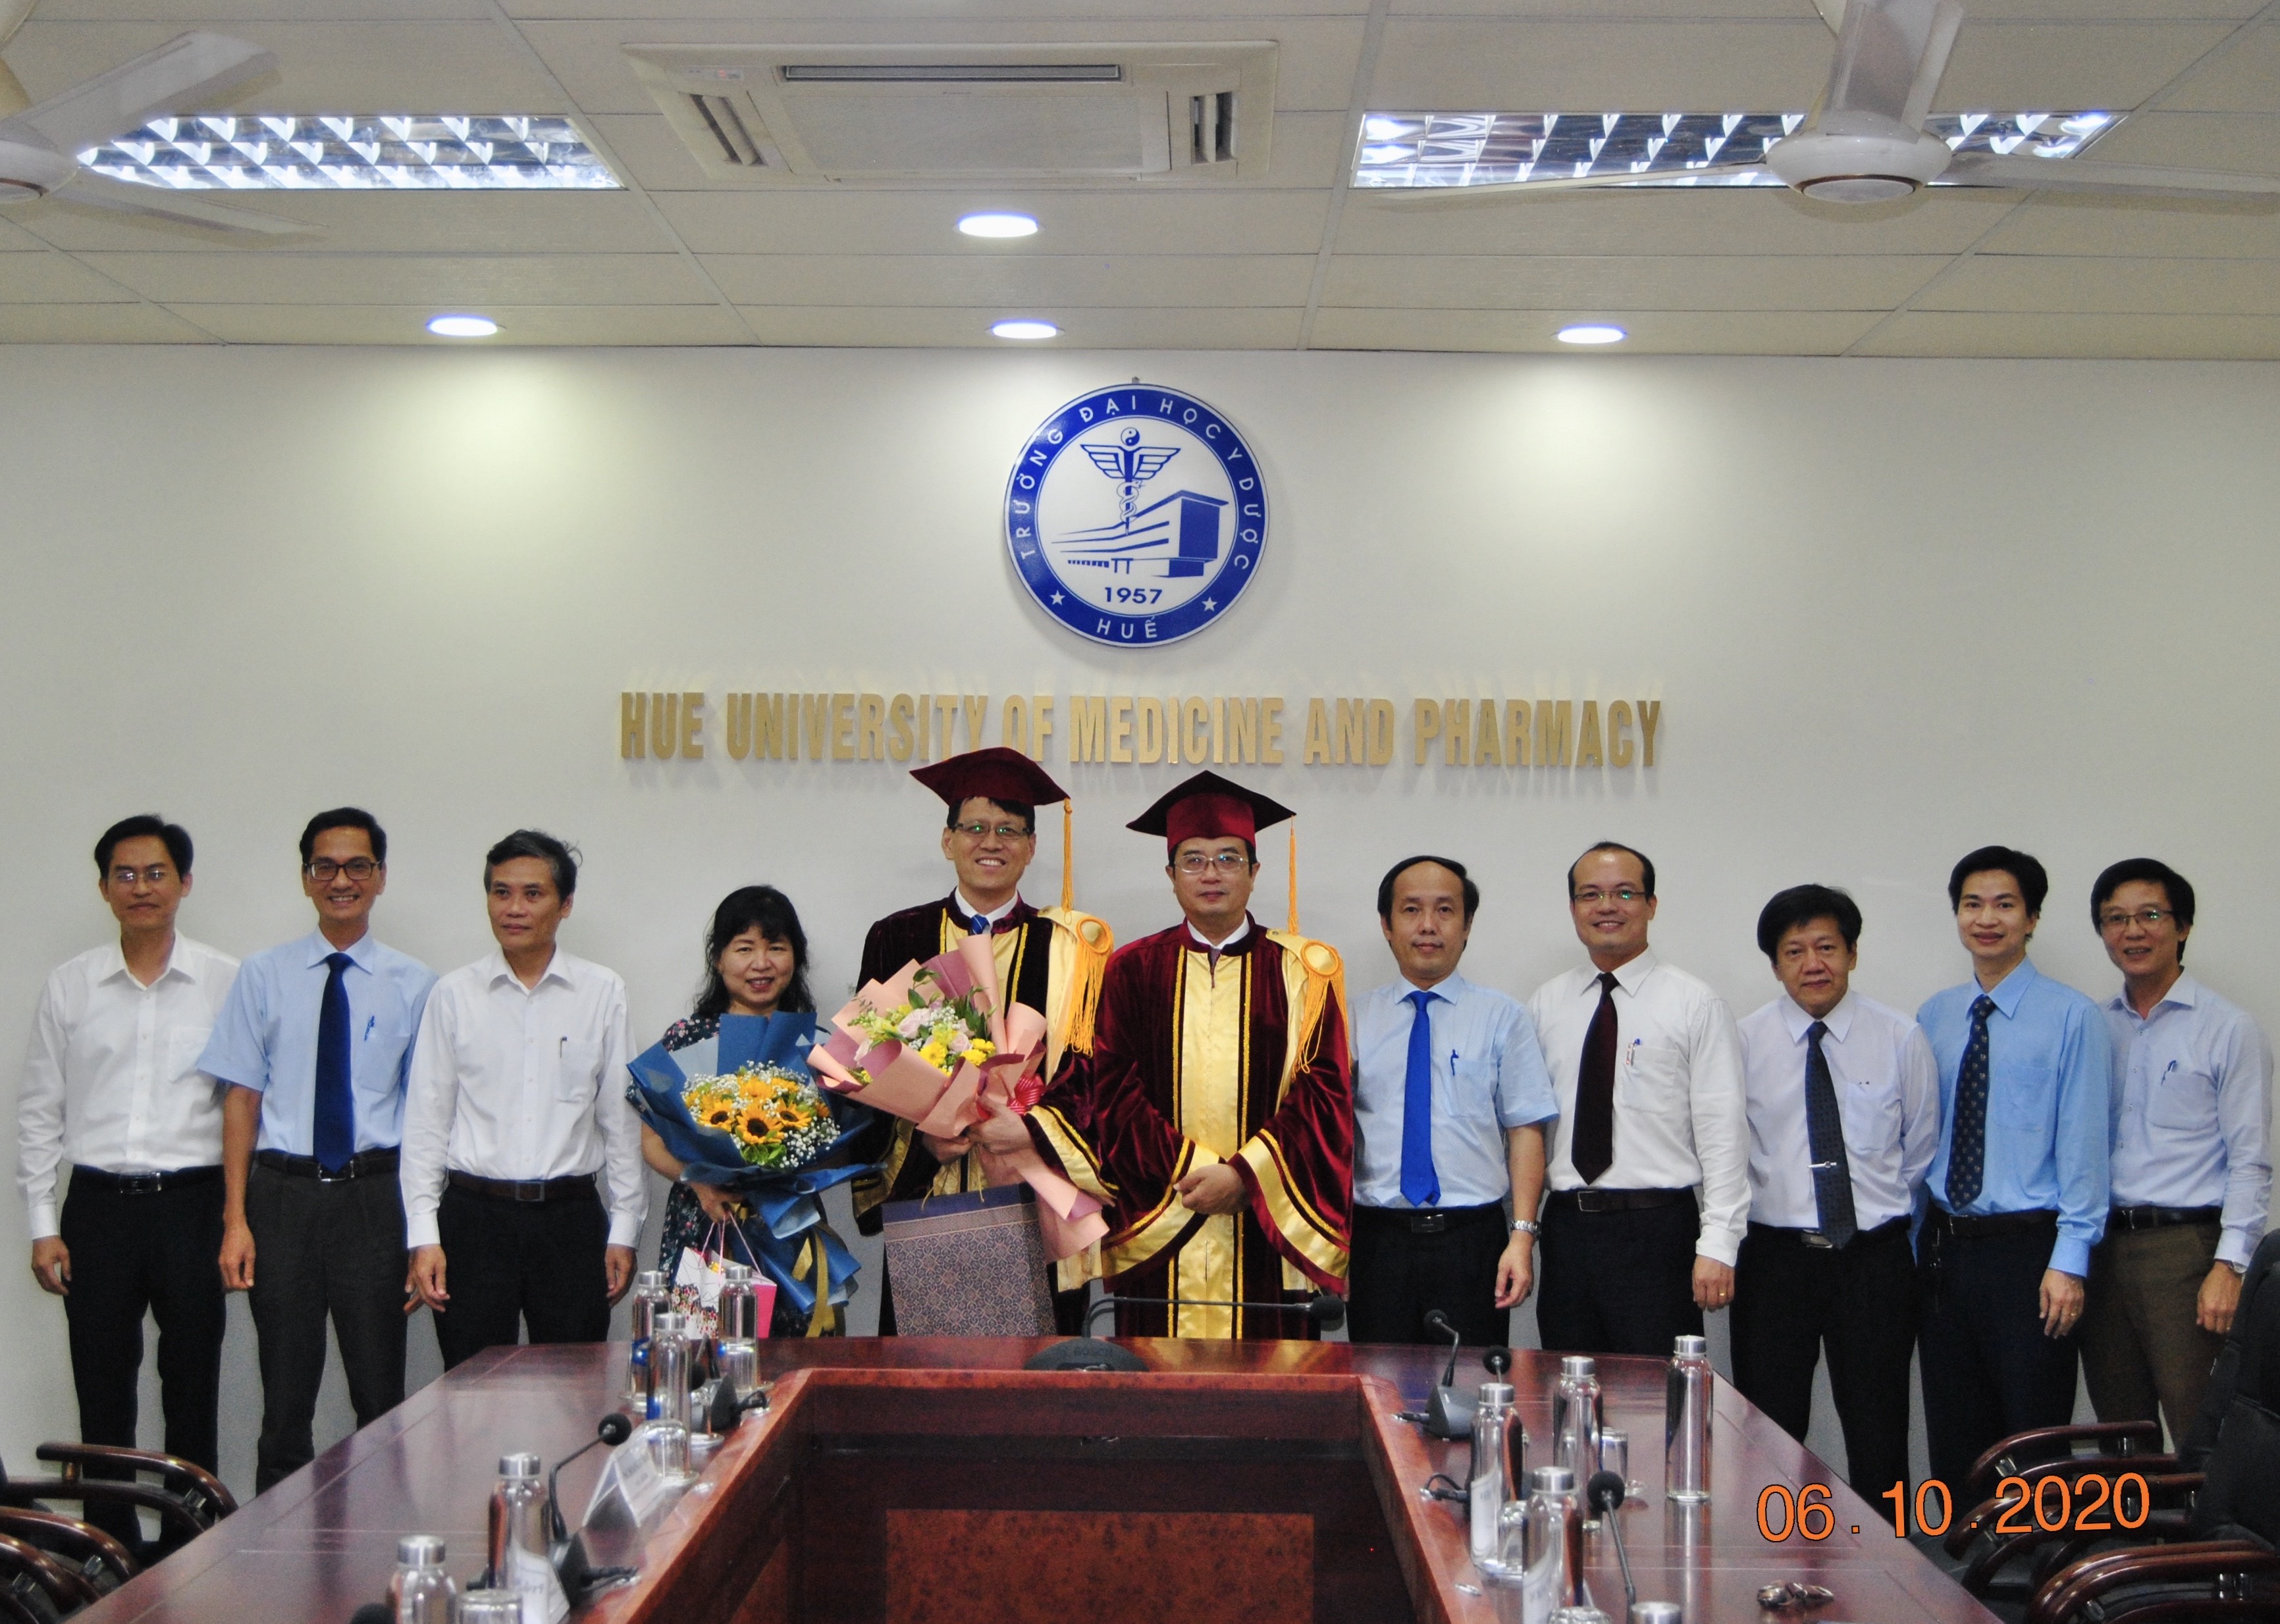 Trao chức danh Giáo sư thỉnh giảng cho BS. Chung Kyu Sung, Bệnh viện Mirae Hankook, Hàn Quốc